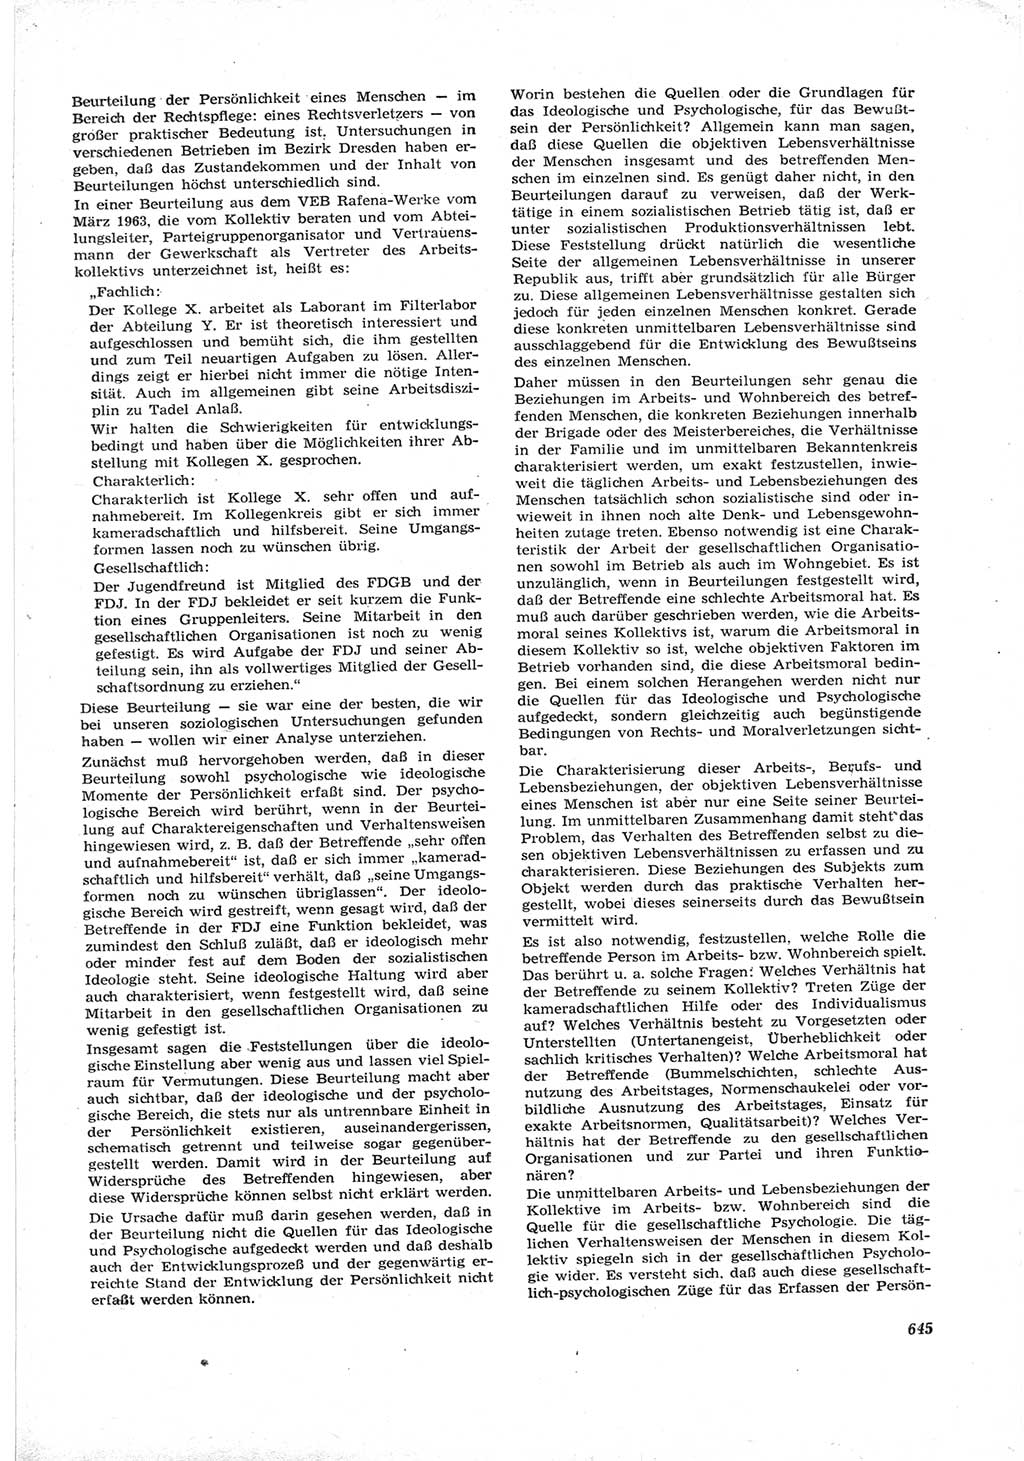 Neue Justiz (NJ), Zeitschrift für Recht und Rechtswissenschaft [Deutsche Demokratische Republik (DDR)], 17. Jahrgang 1963, Seite 645 (NJ DDR 1963, S. 645)